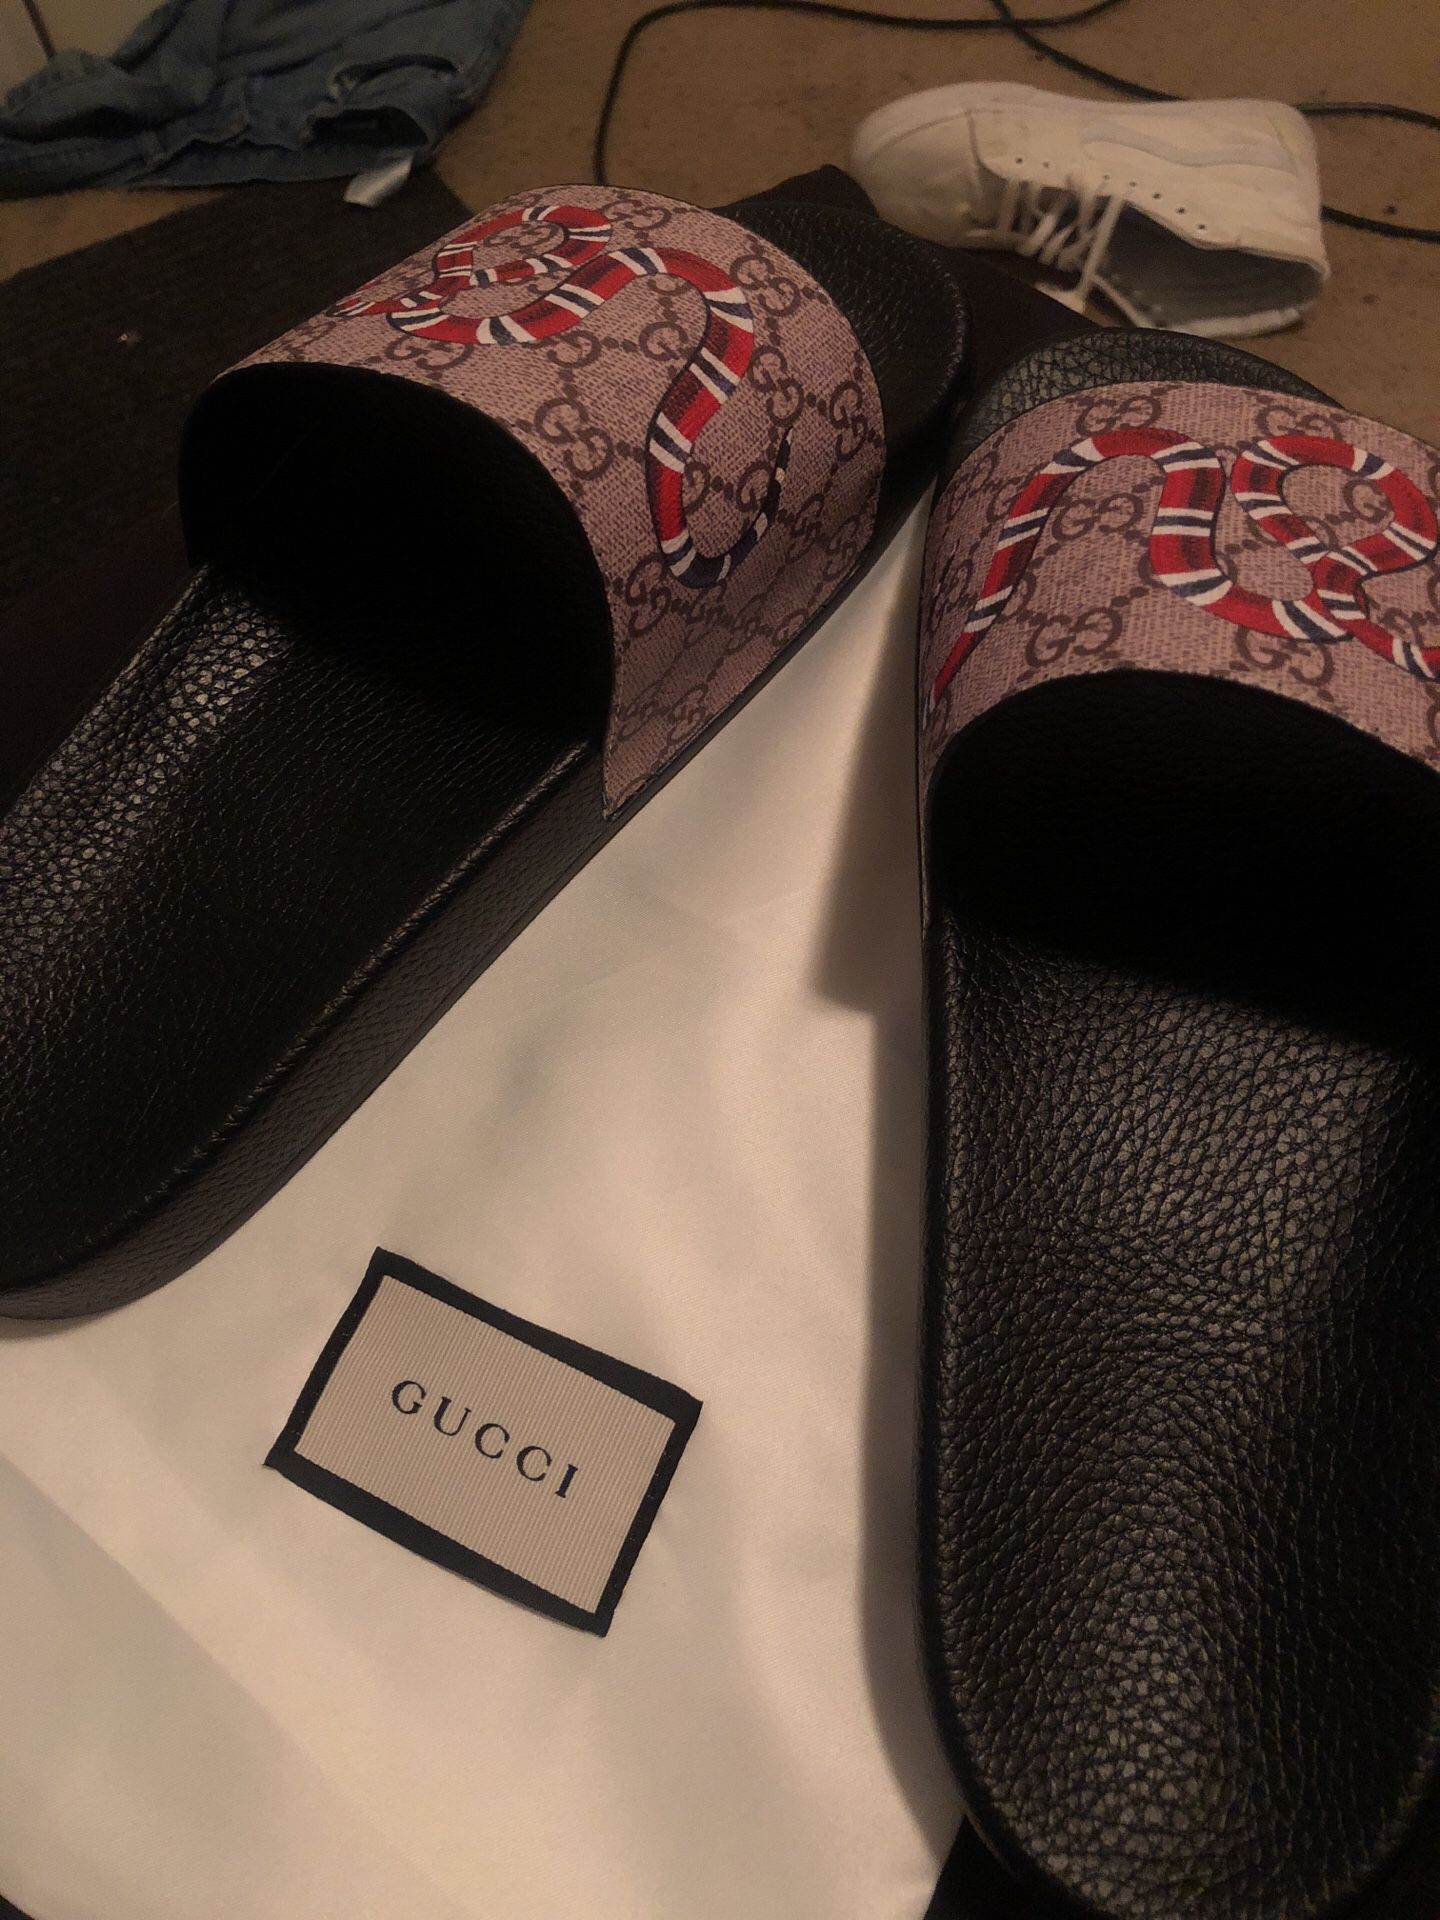 Gucci flip flops